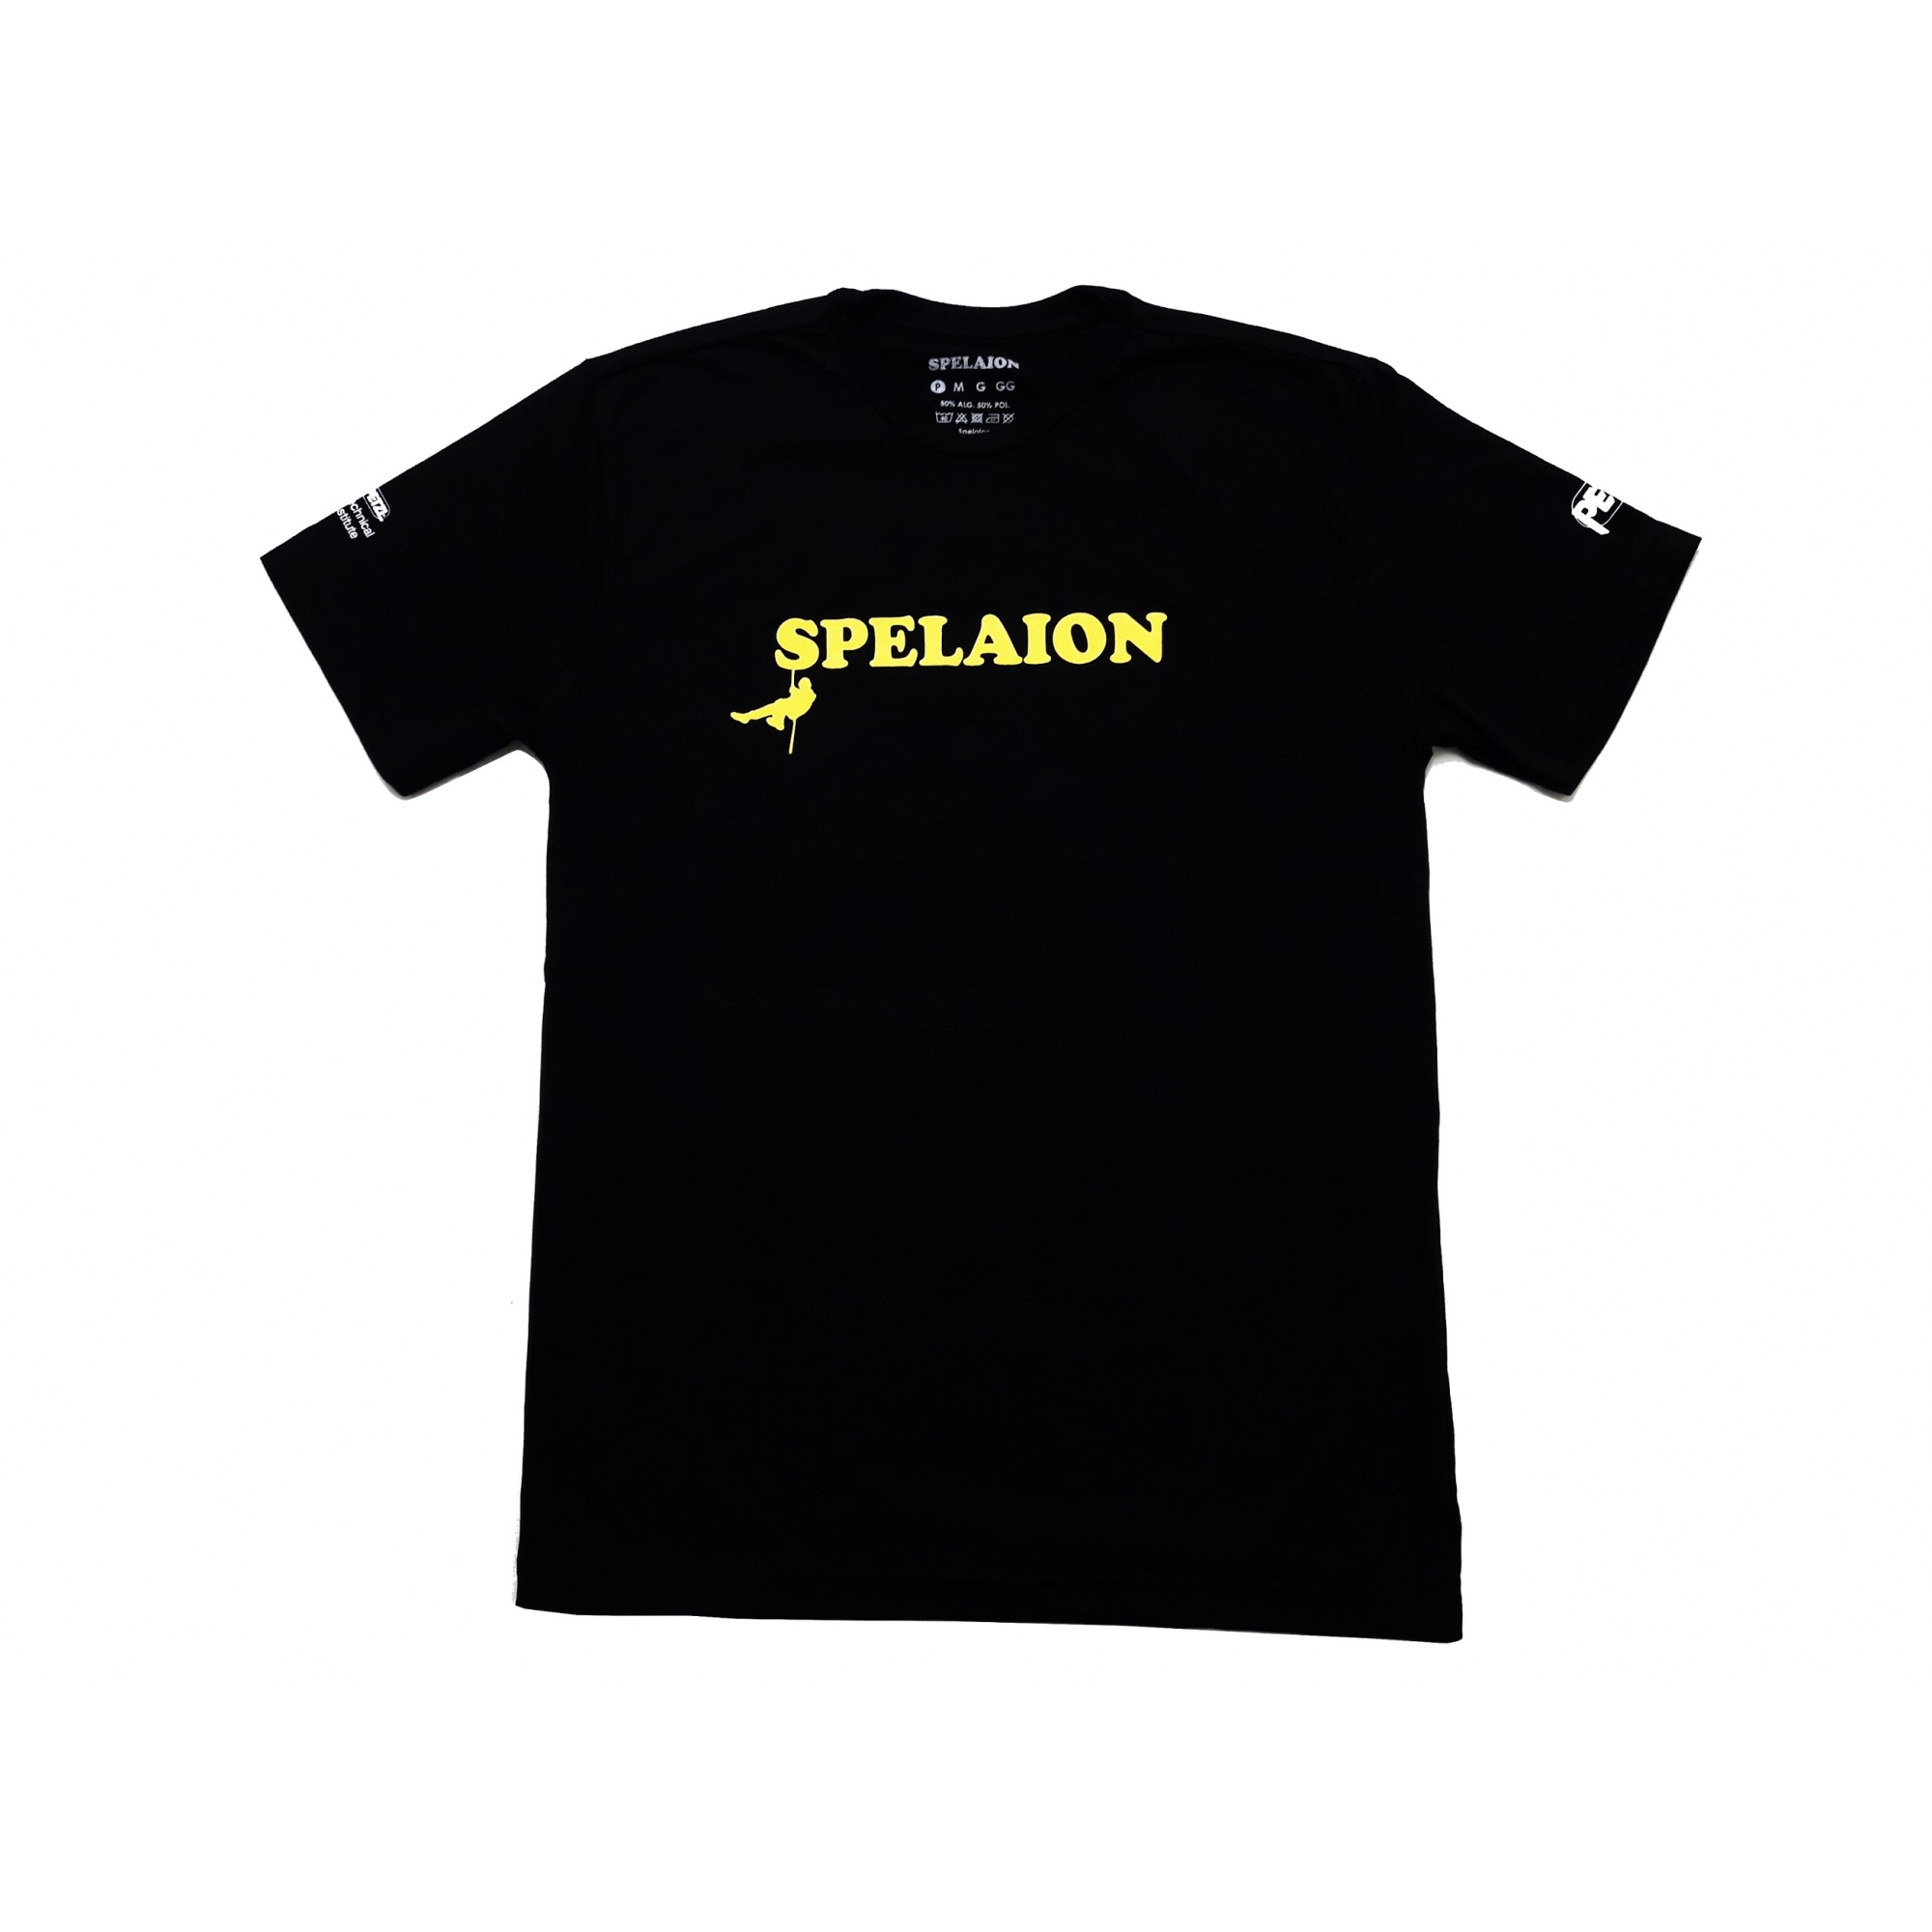 Camiseta Spelaion Cor Preta - Loja Spelaion - Representante oficial da  marca Petzl no Brasil